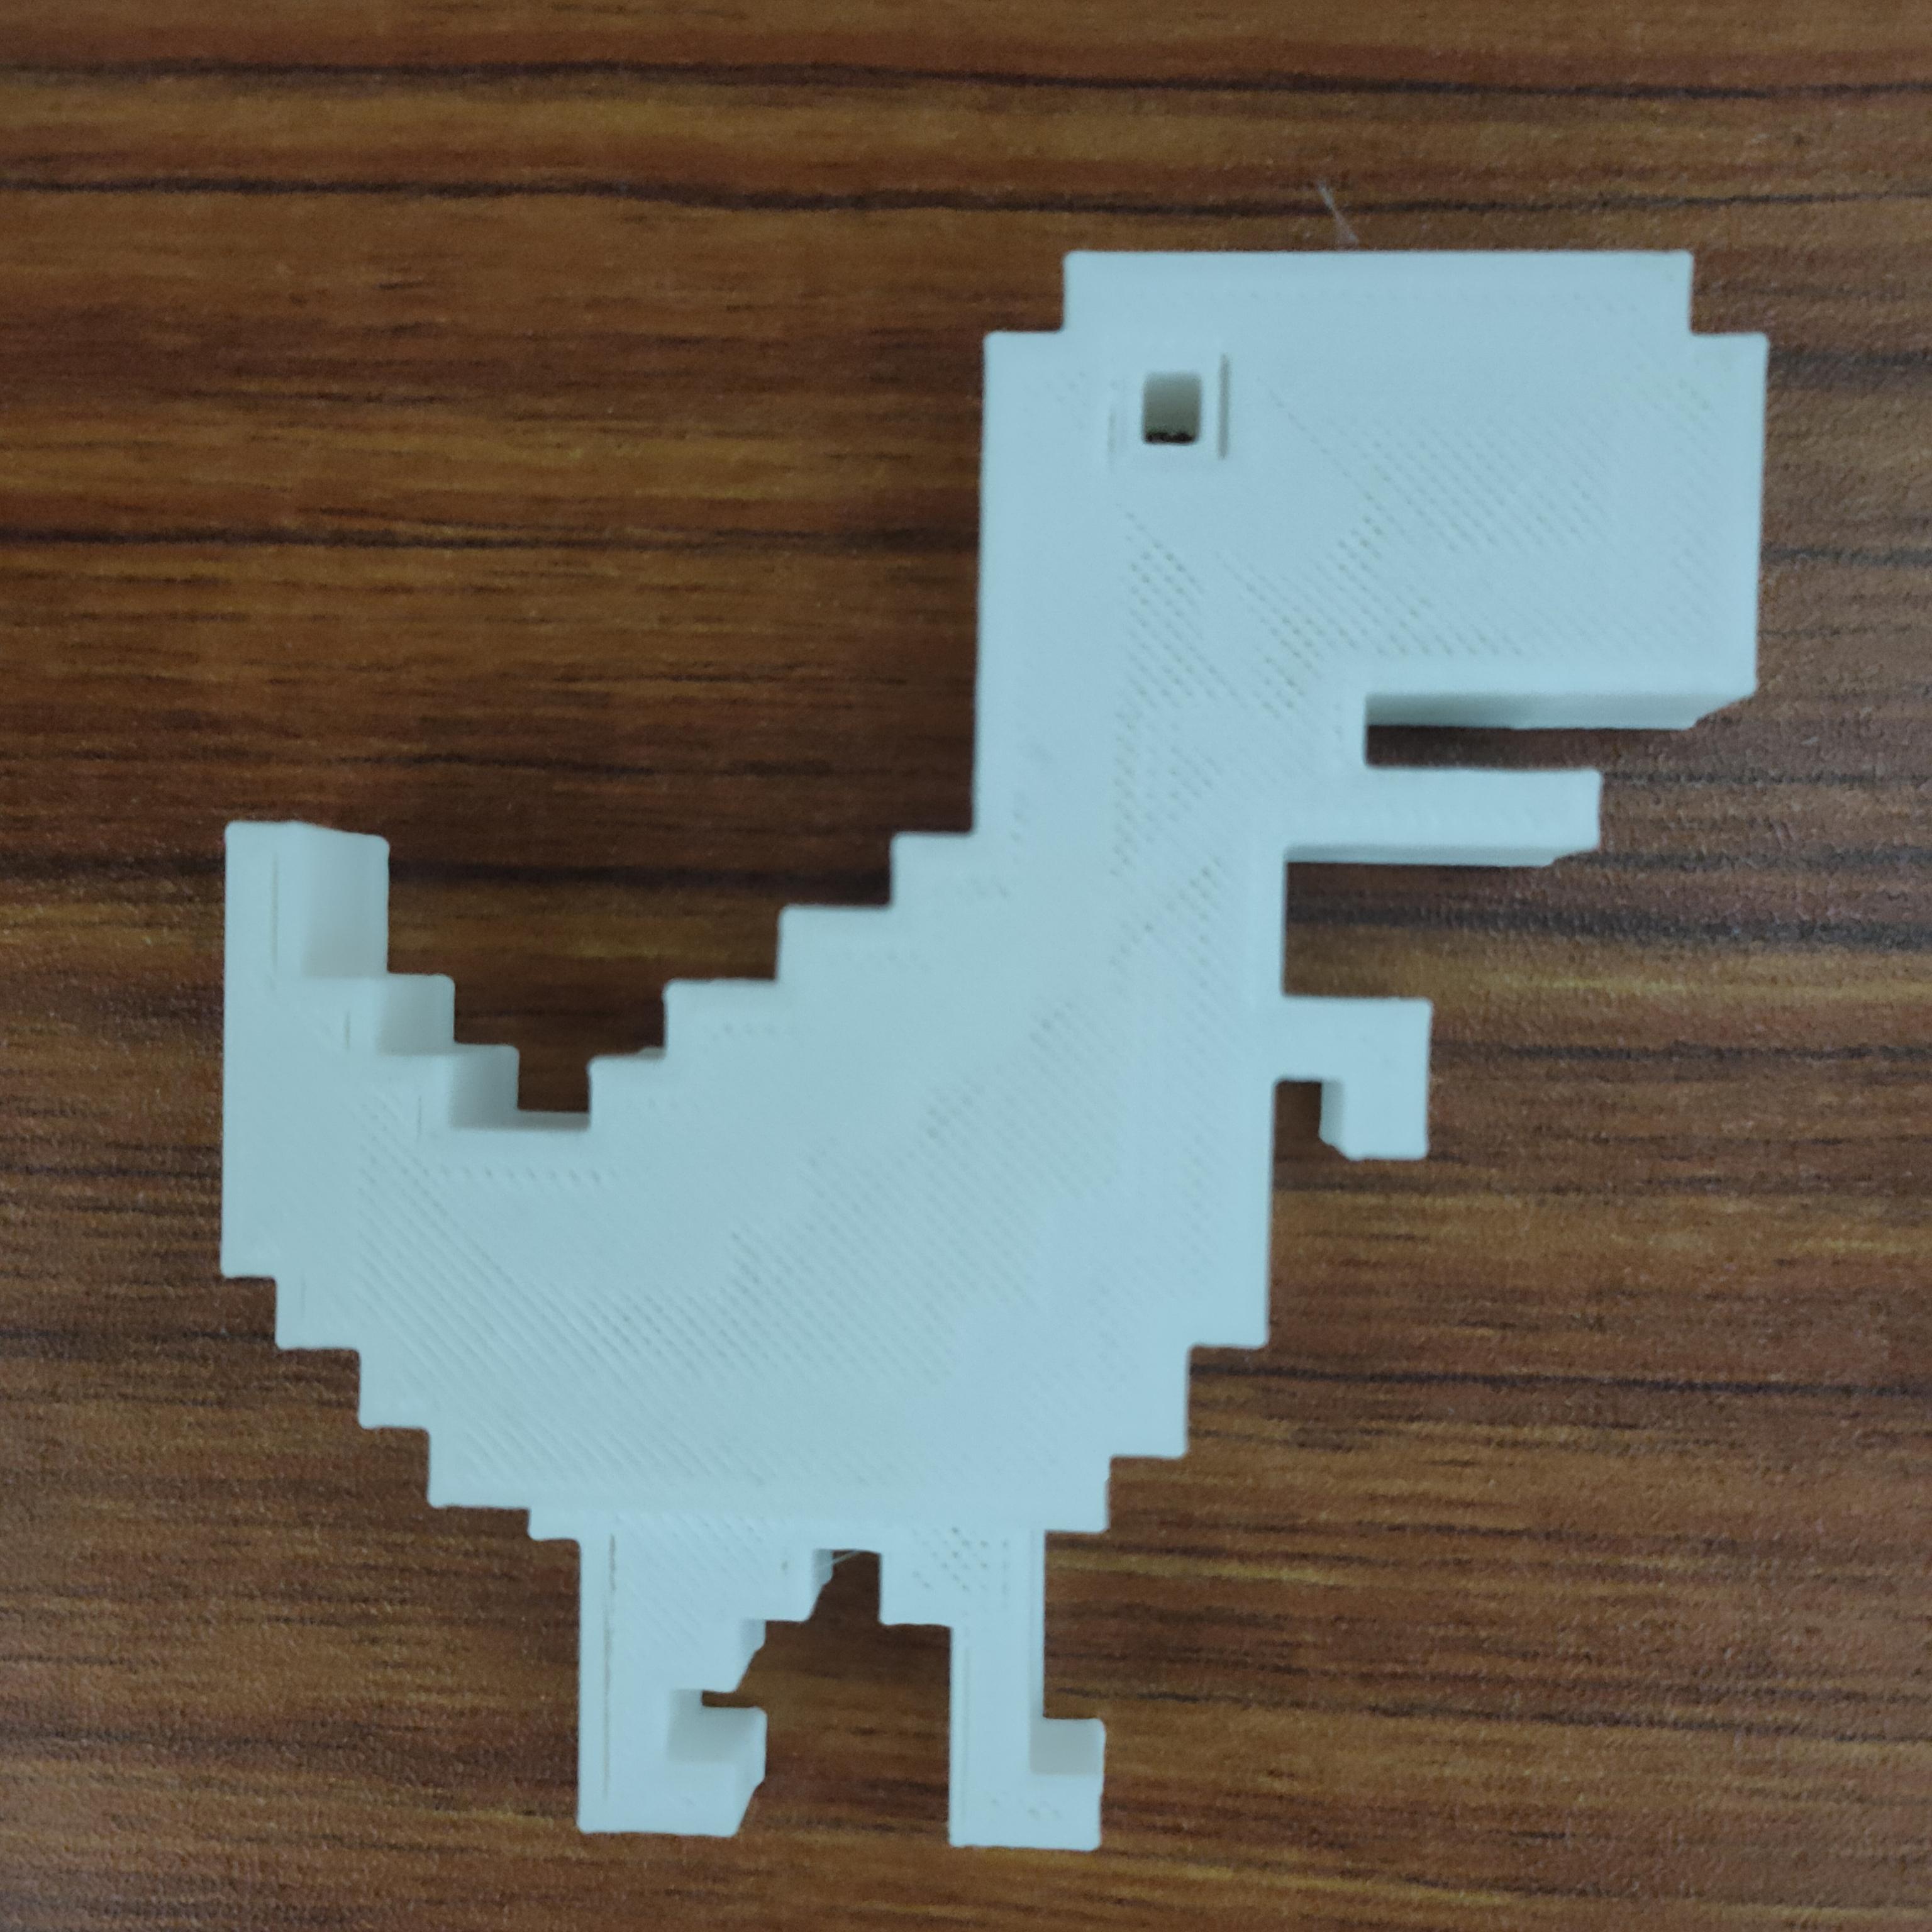 I made the Chrome Dinosaur Game 3D! 